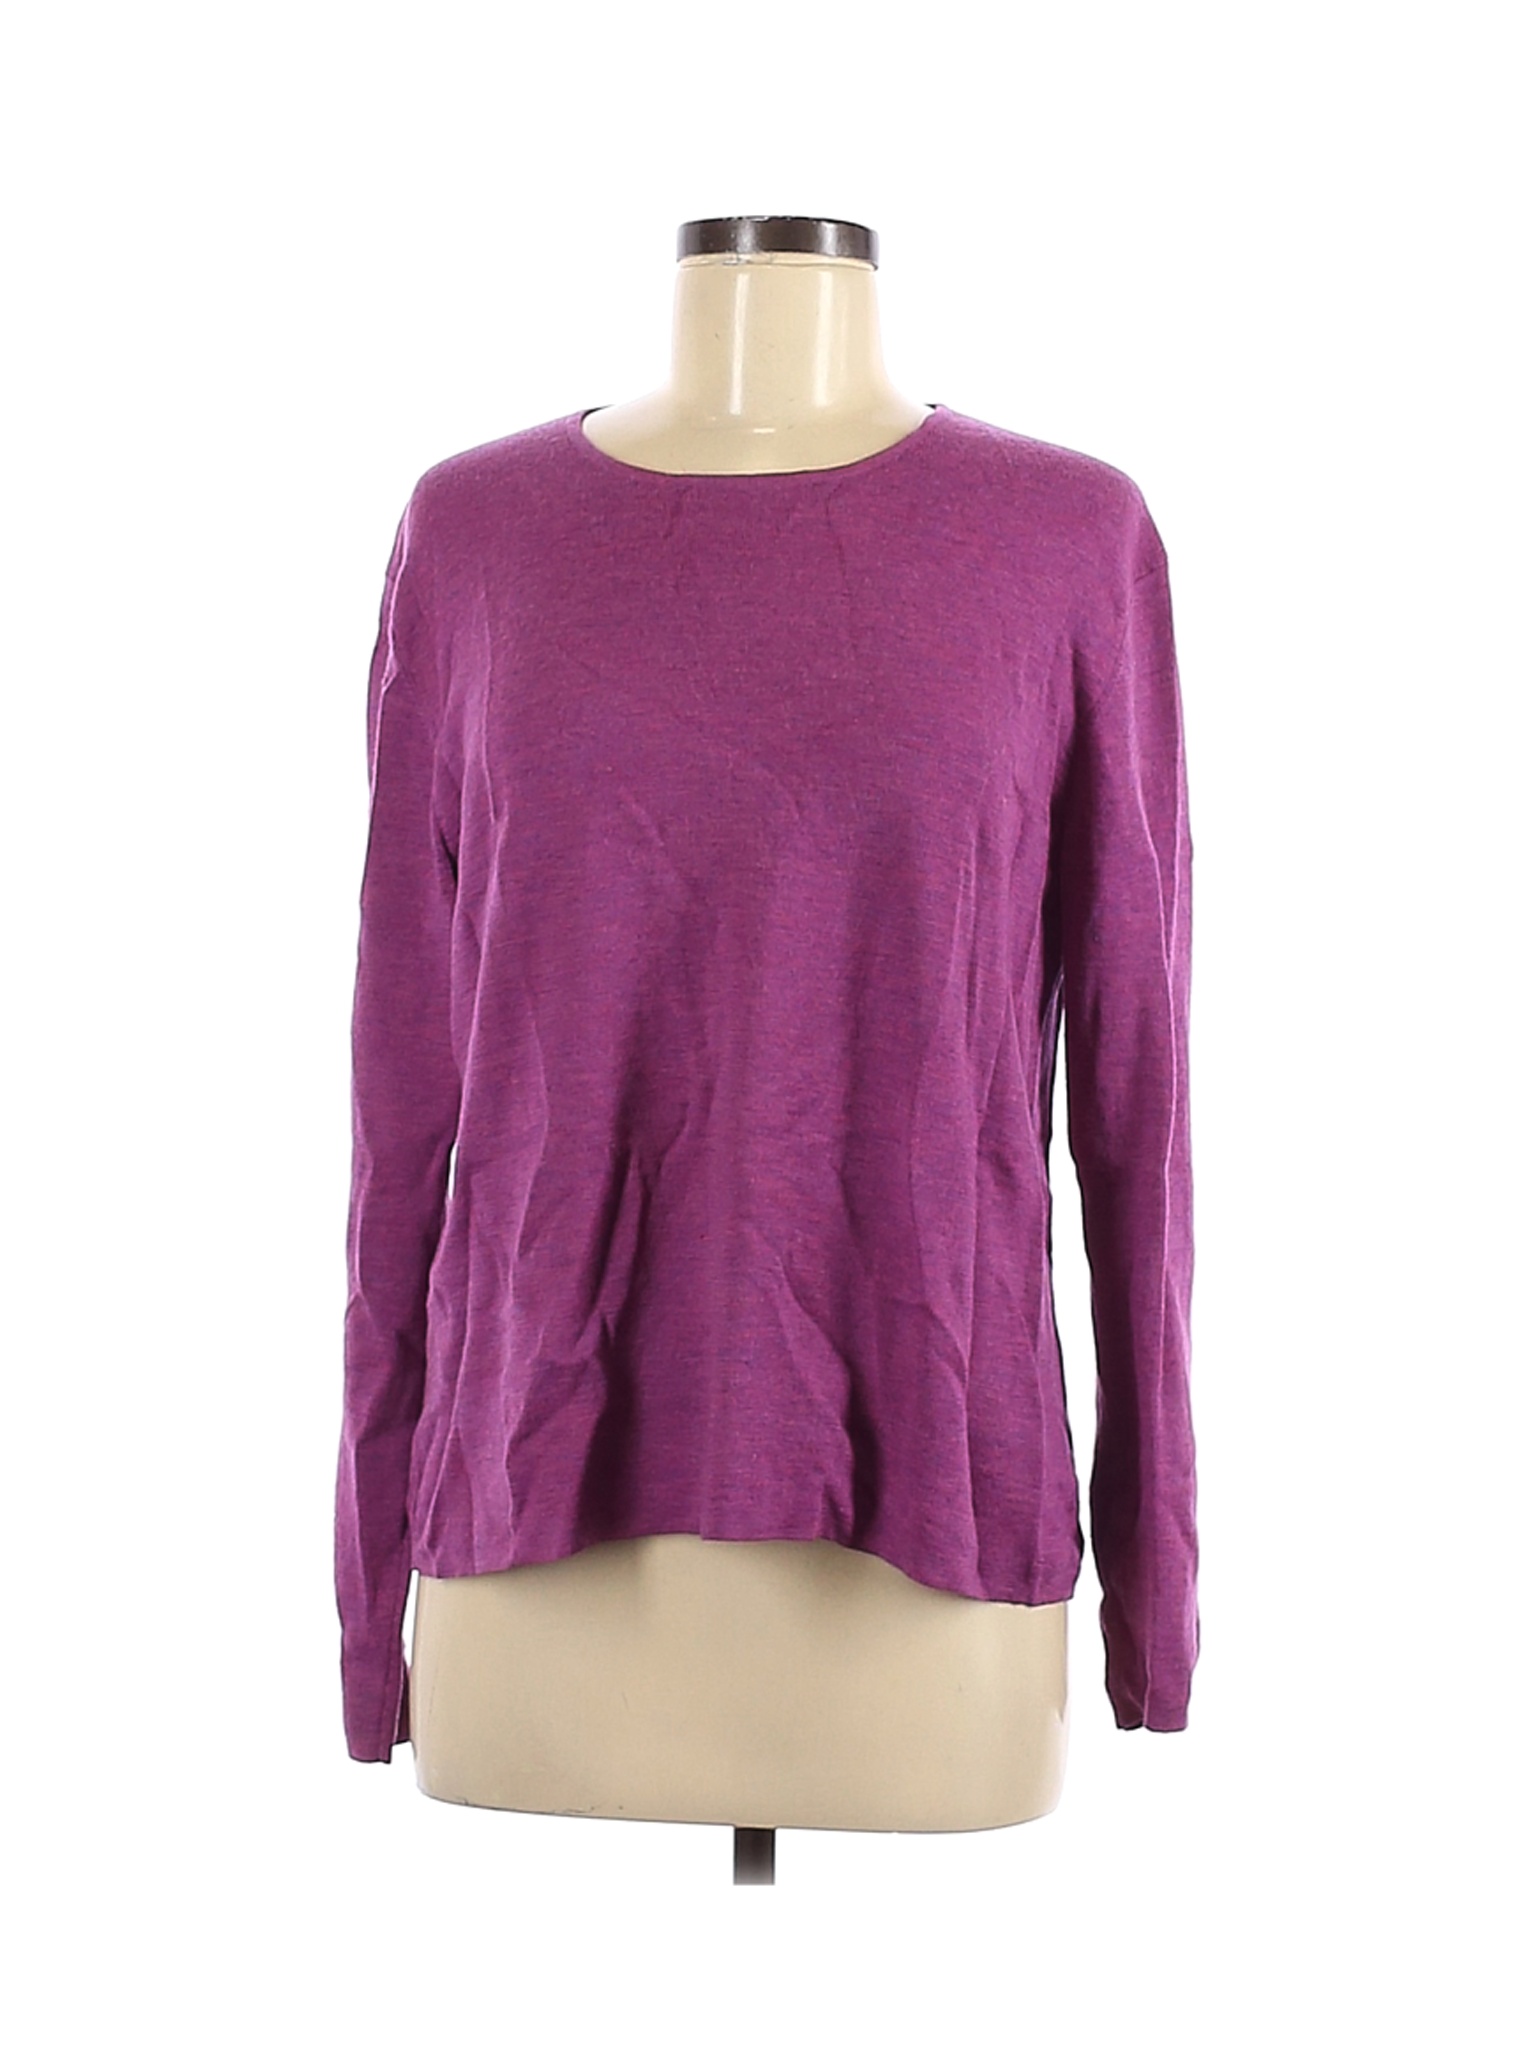 Eileen Fisher Women Purple Wool Pullover Sweater L | eBay